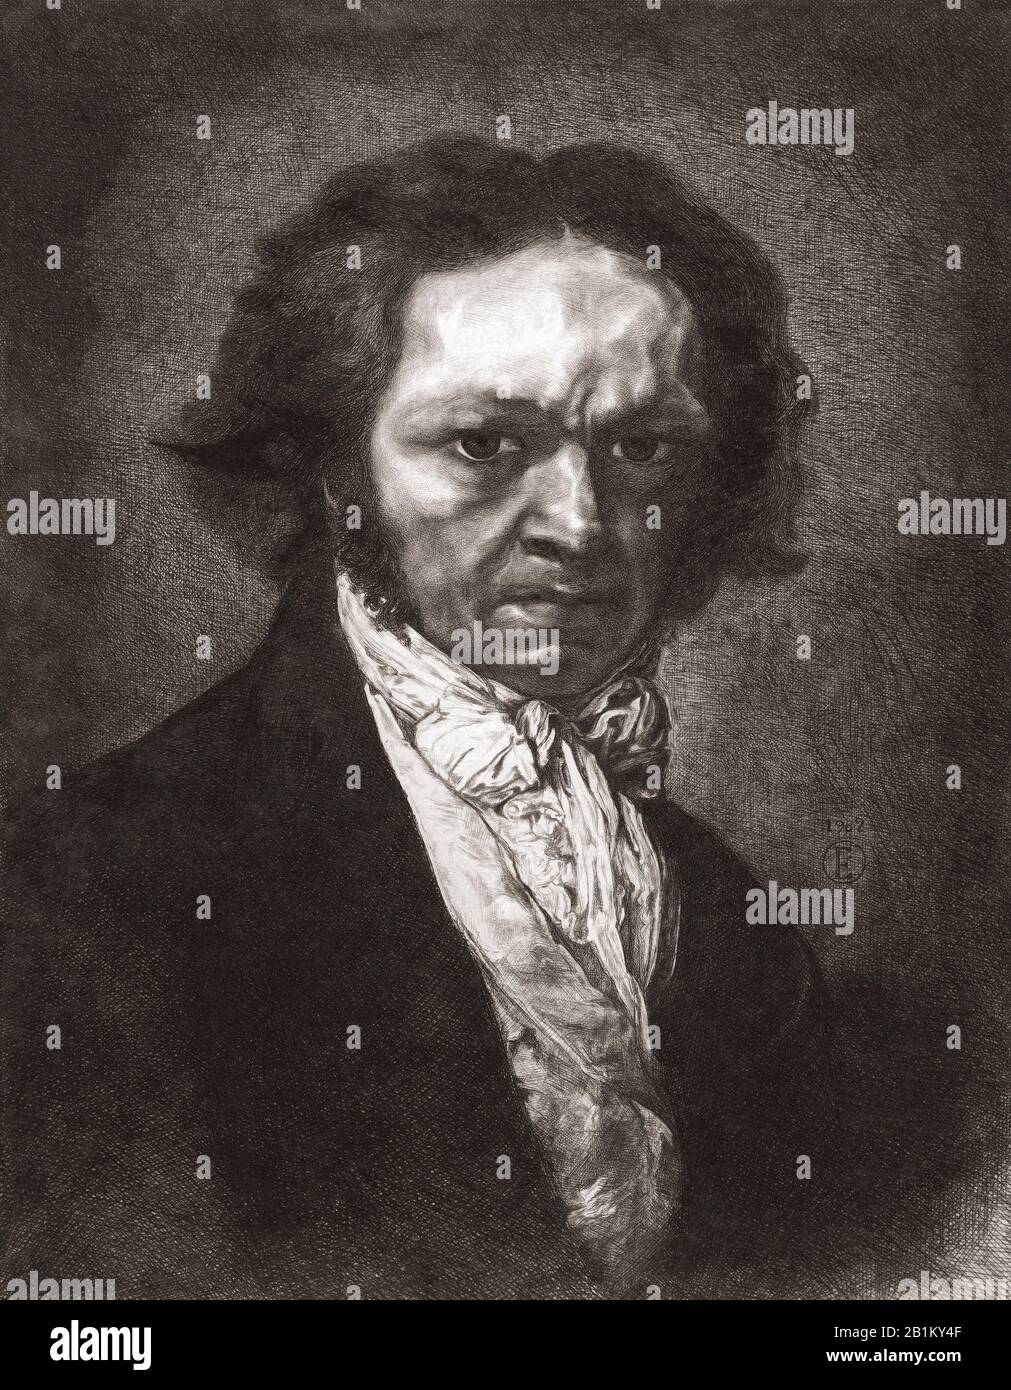 Portrait de Francisco de Goya. Francisco José de Goya y Lucientes, 1746 - 1828. Peintre et graveur espagnol. Après une gravure de Rogelio de Egusquiza y Barrena, 1845 – 1915. Banque D'Images